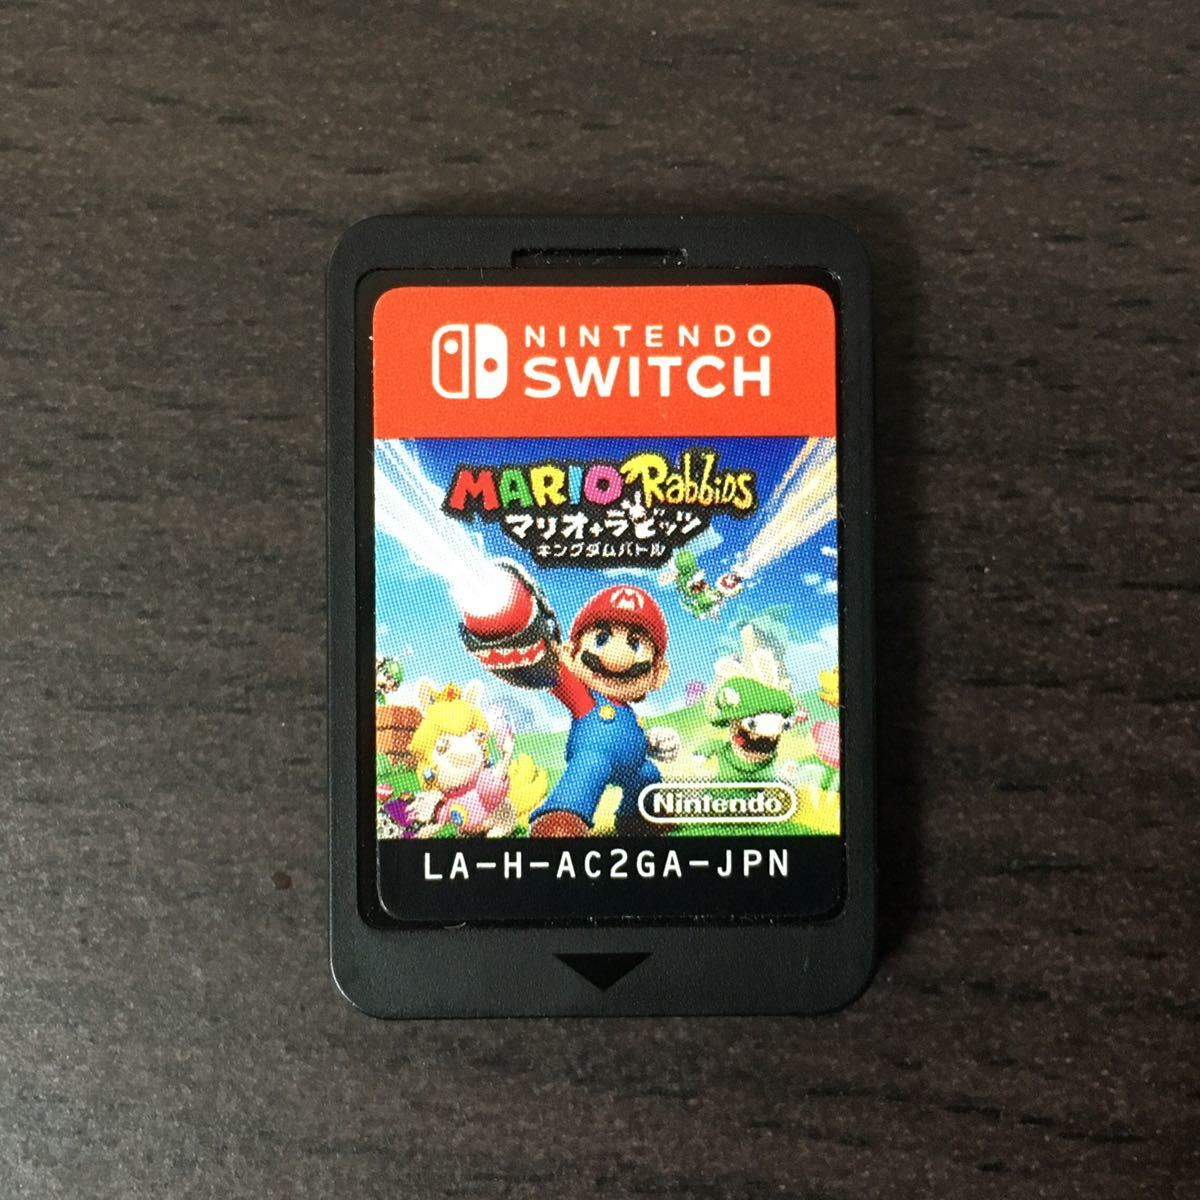 【 マリオ + ラビッツ キングダムバトル 】 Nintendo Switch スーパーマリオ 任天堂 スイッチ ソフト 